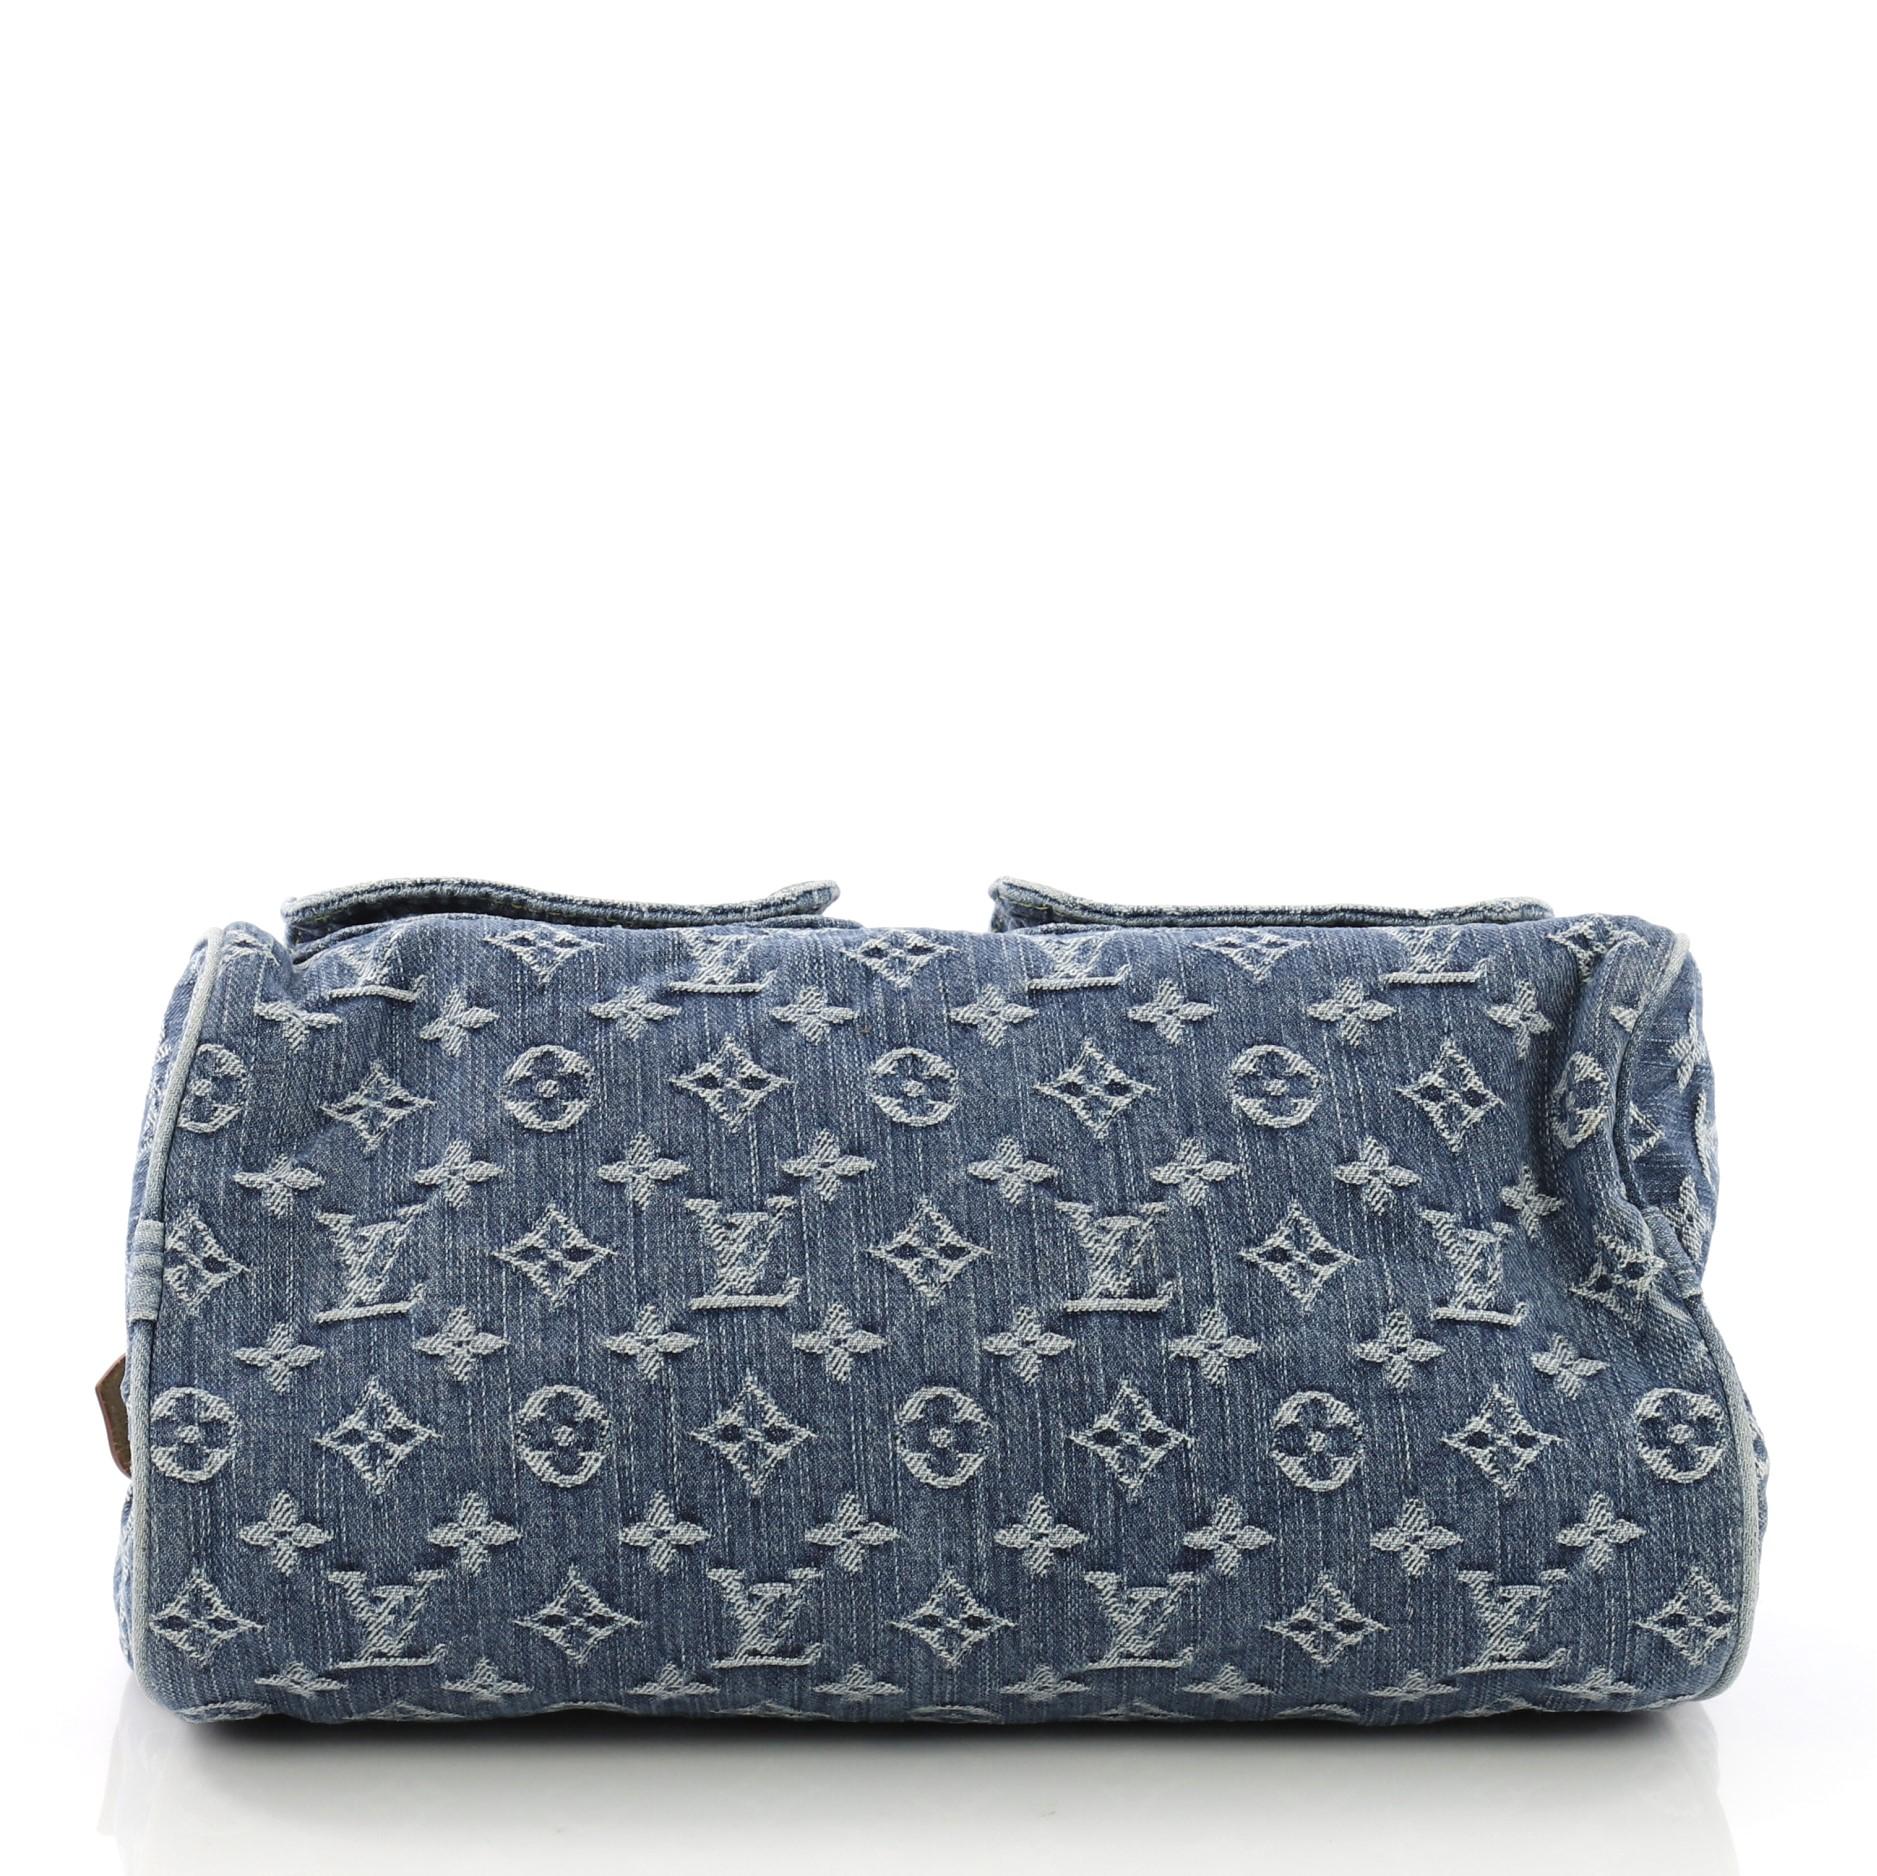 Women's Louis Vuitton Neo Speedy Bag Denim